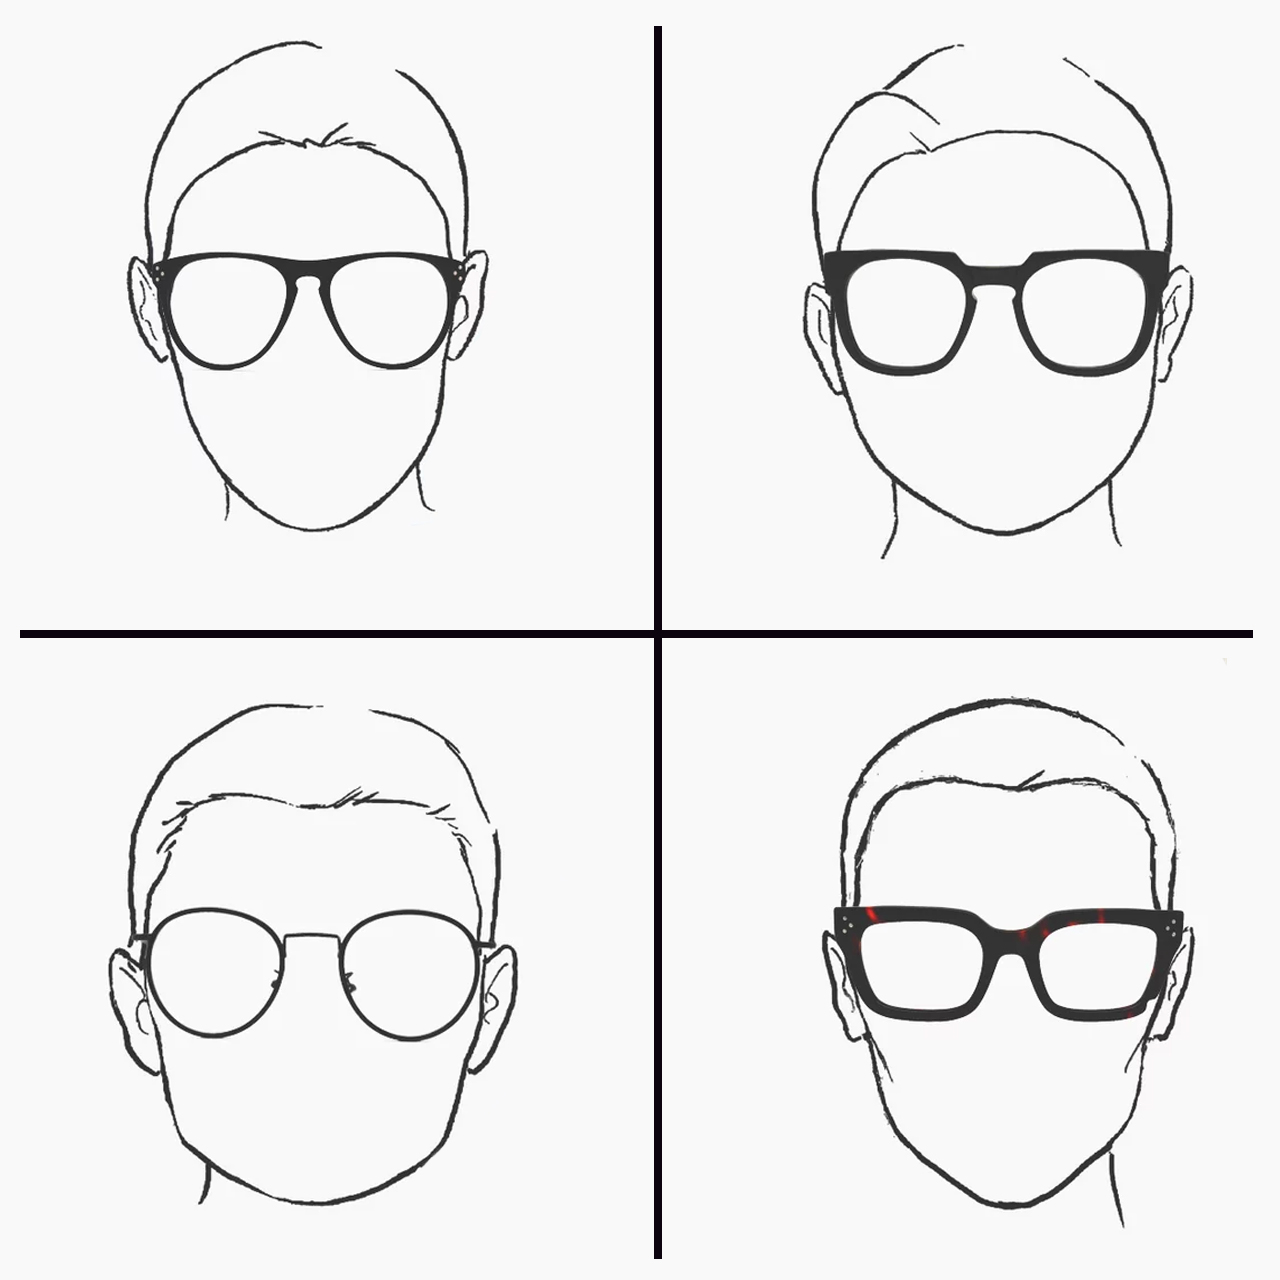 Как правильно выбрать очки по форме лица. Подобрать очки по форме лица. Подобрать солнцезащитные очки по форме лица мужчине. Форма оправы под форму лица. Очки мужчине по форме лица.